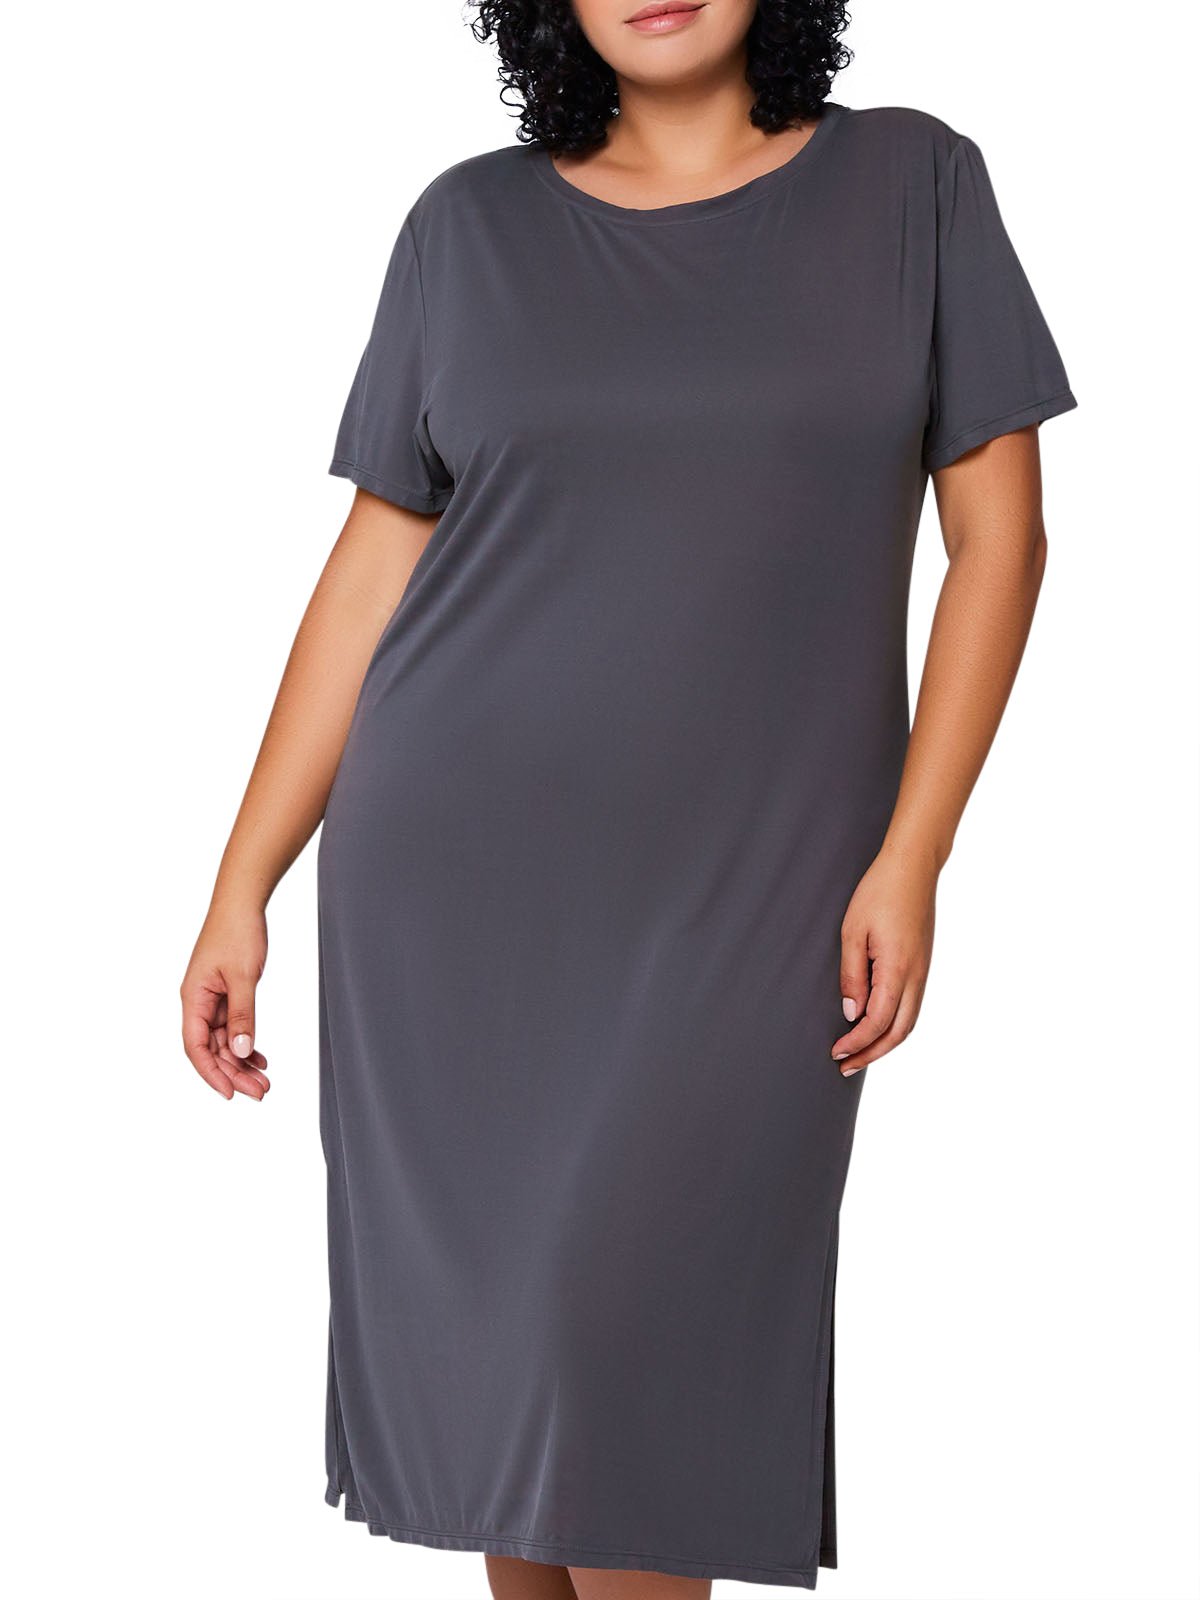 iCollection Dress Women&#39;s Jasper Plus Size Dress Loungewear